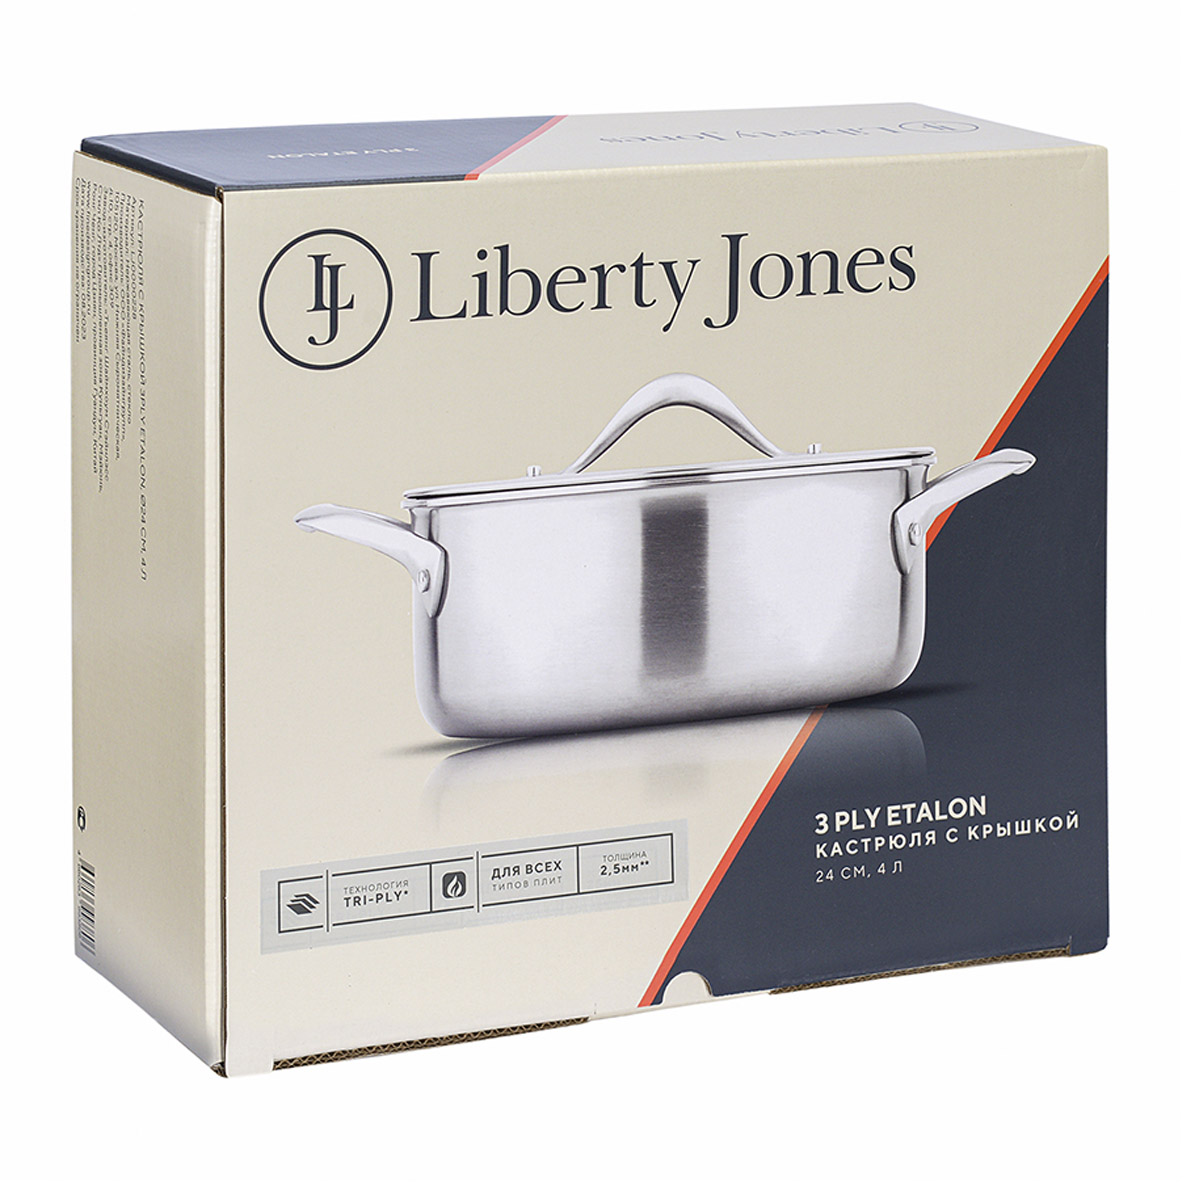 Кастрюля с крышкой Liberty Jones 3Ply Etalon 4л Liberty Jones LJ0000228, цвет стальной - фото 9